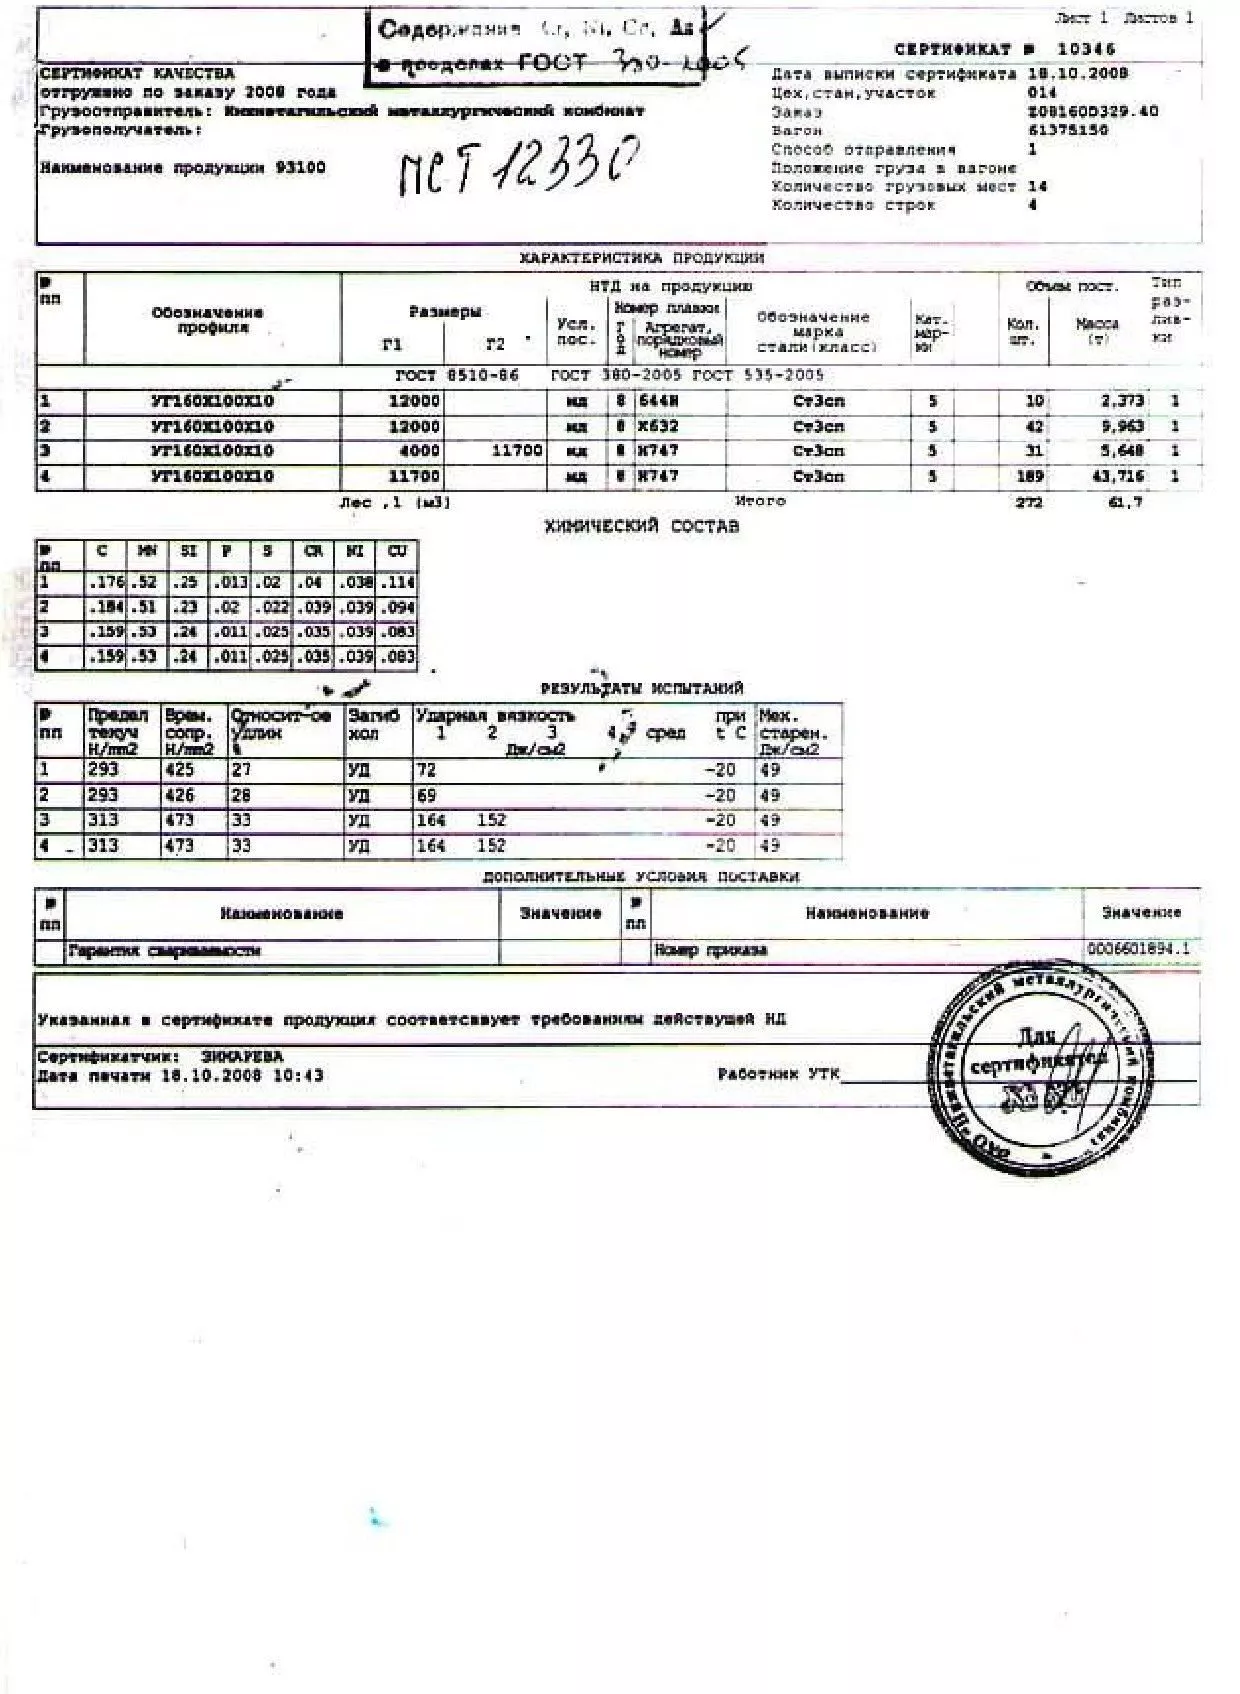 Сертификат на уголок неравнополочный 160х100х10 от 10-08